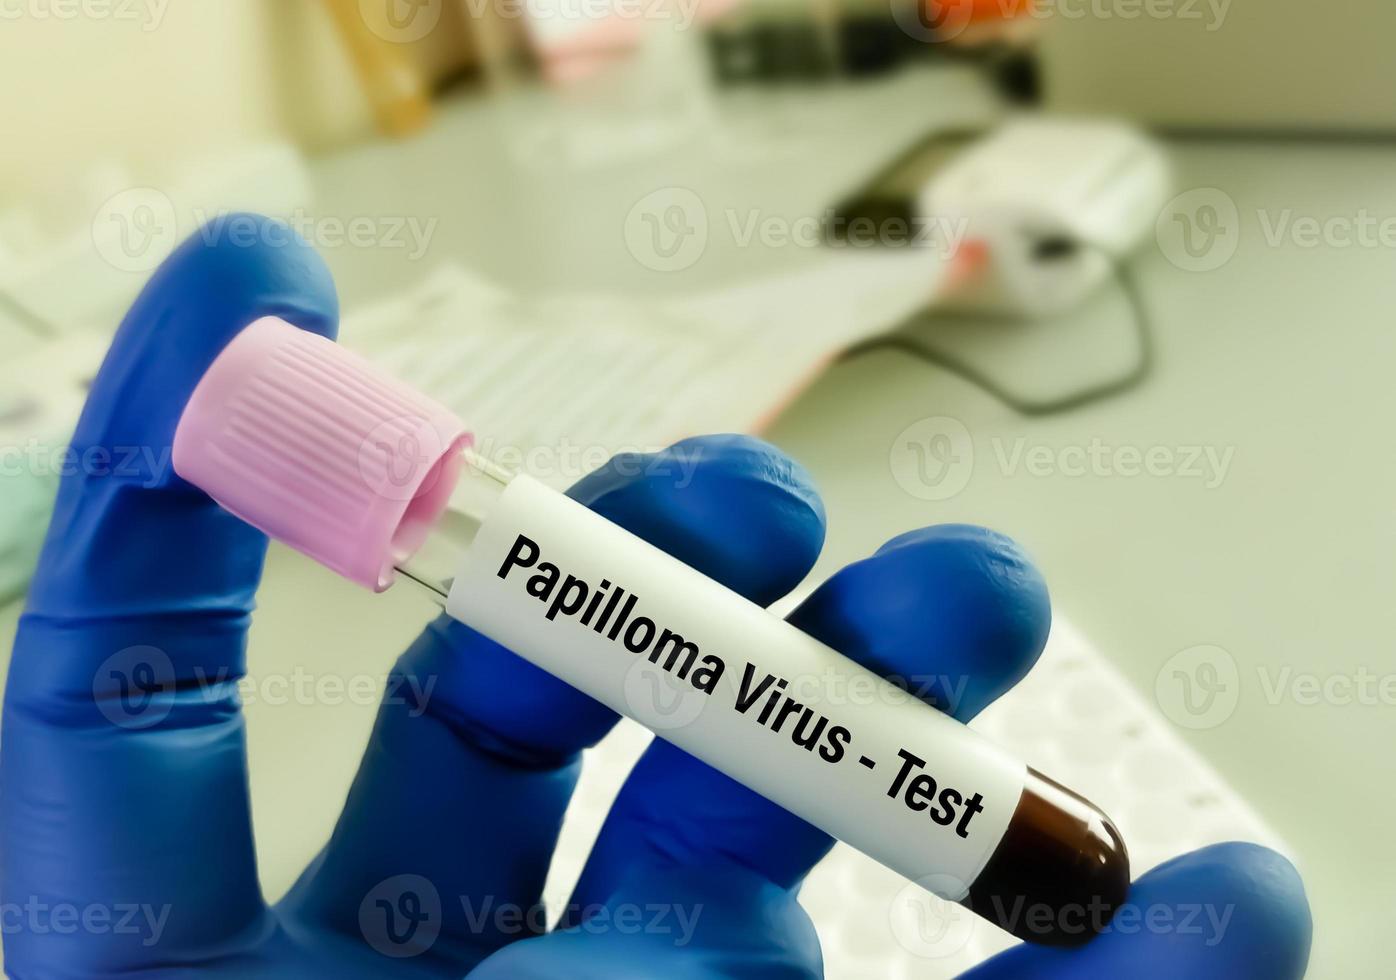 hpv vírus ou humano papilomavírus em tubo , médico e saúde Cuidado conceito. foto